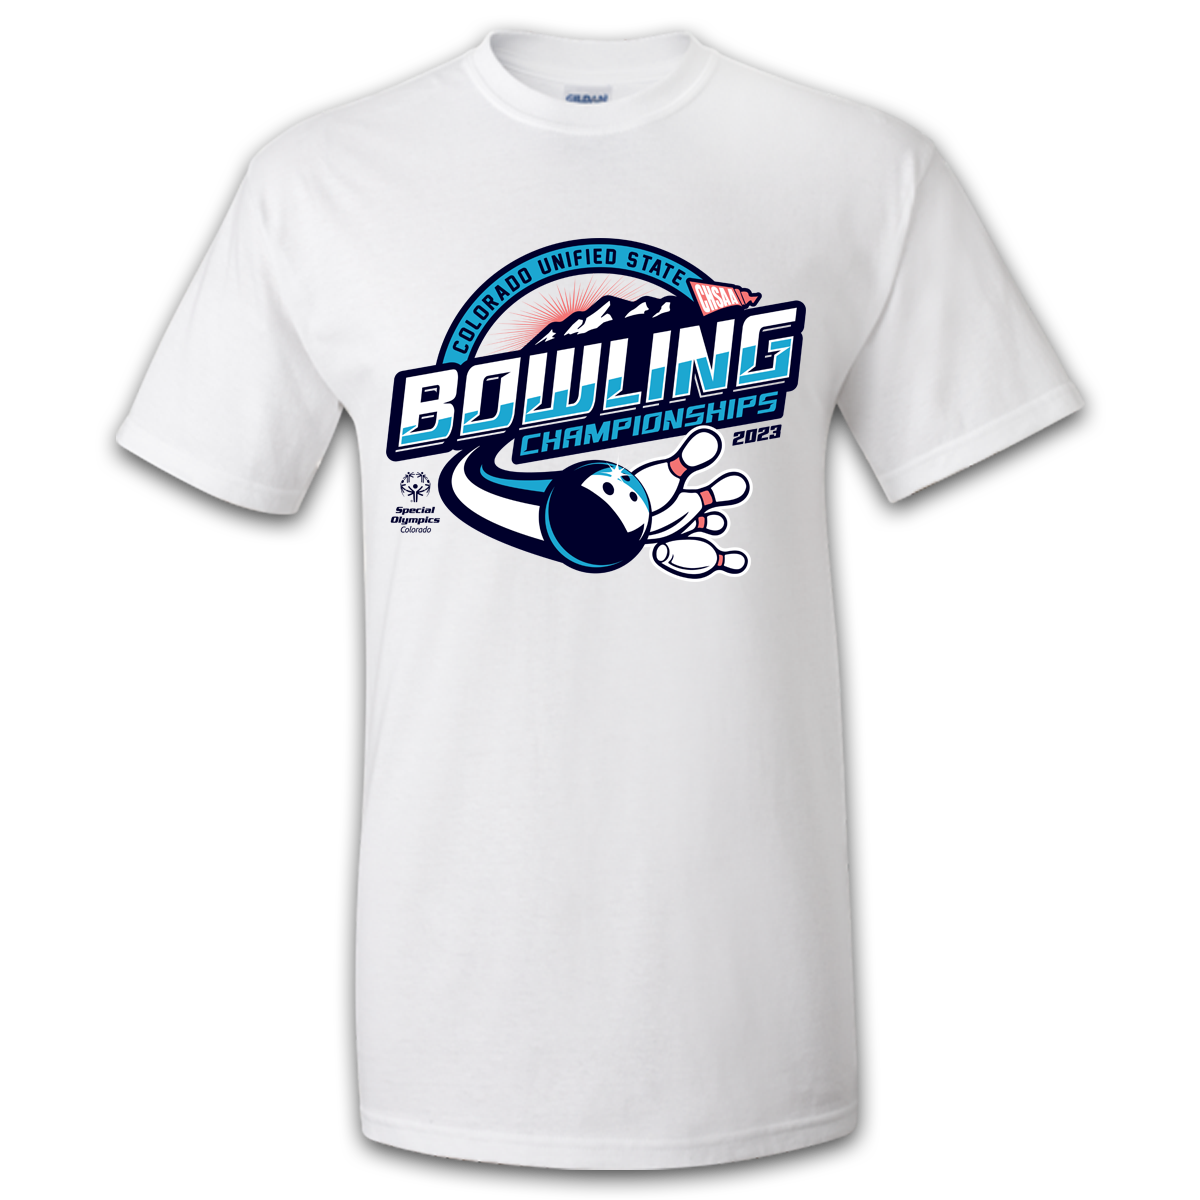 2023 CHSAA State Championship Unified Bowling T-Shirt